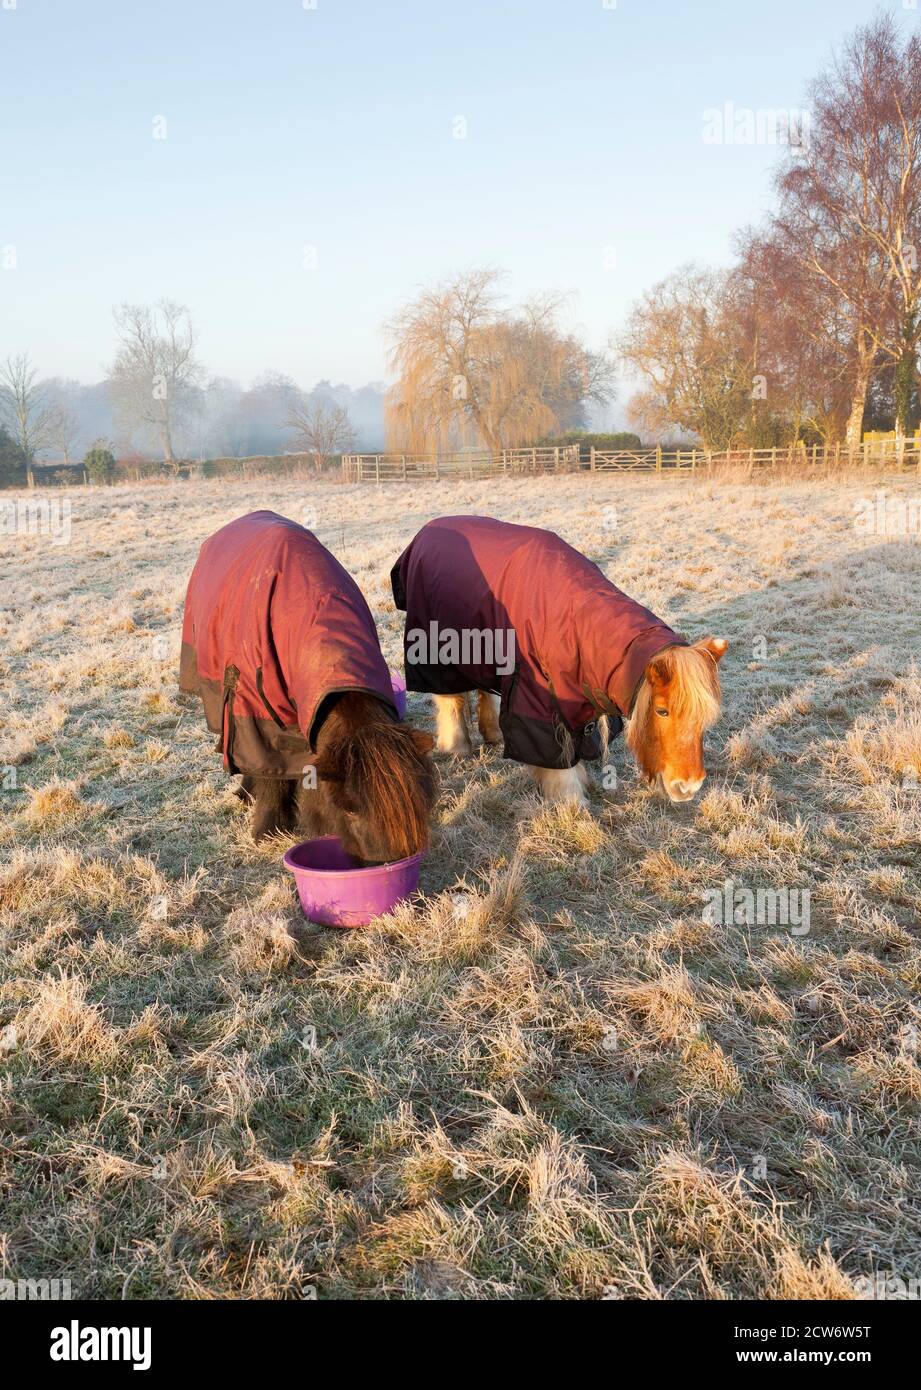 Zwei Ponys tragen wasserdichte Weiche Teppiche im Freien in einem frostigen  Ein Stockfotografie - Alamy